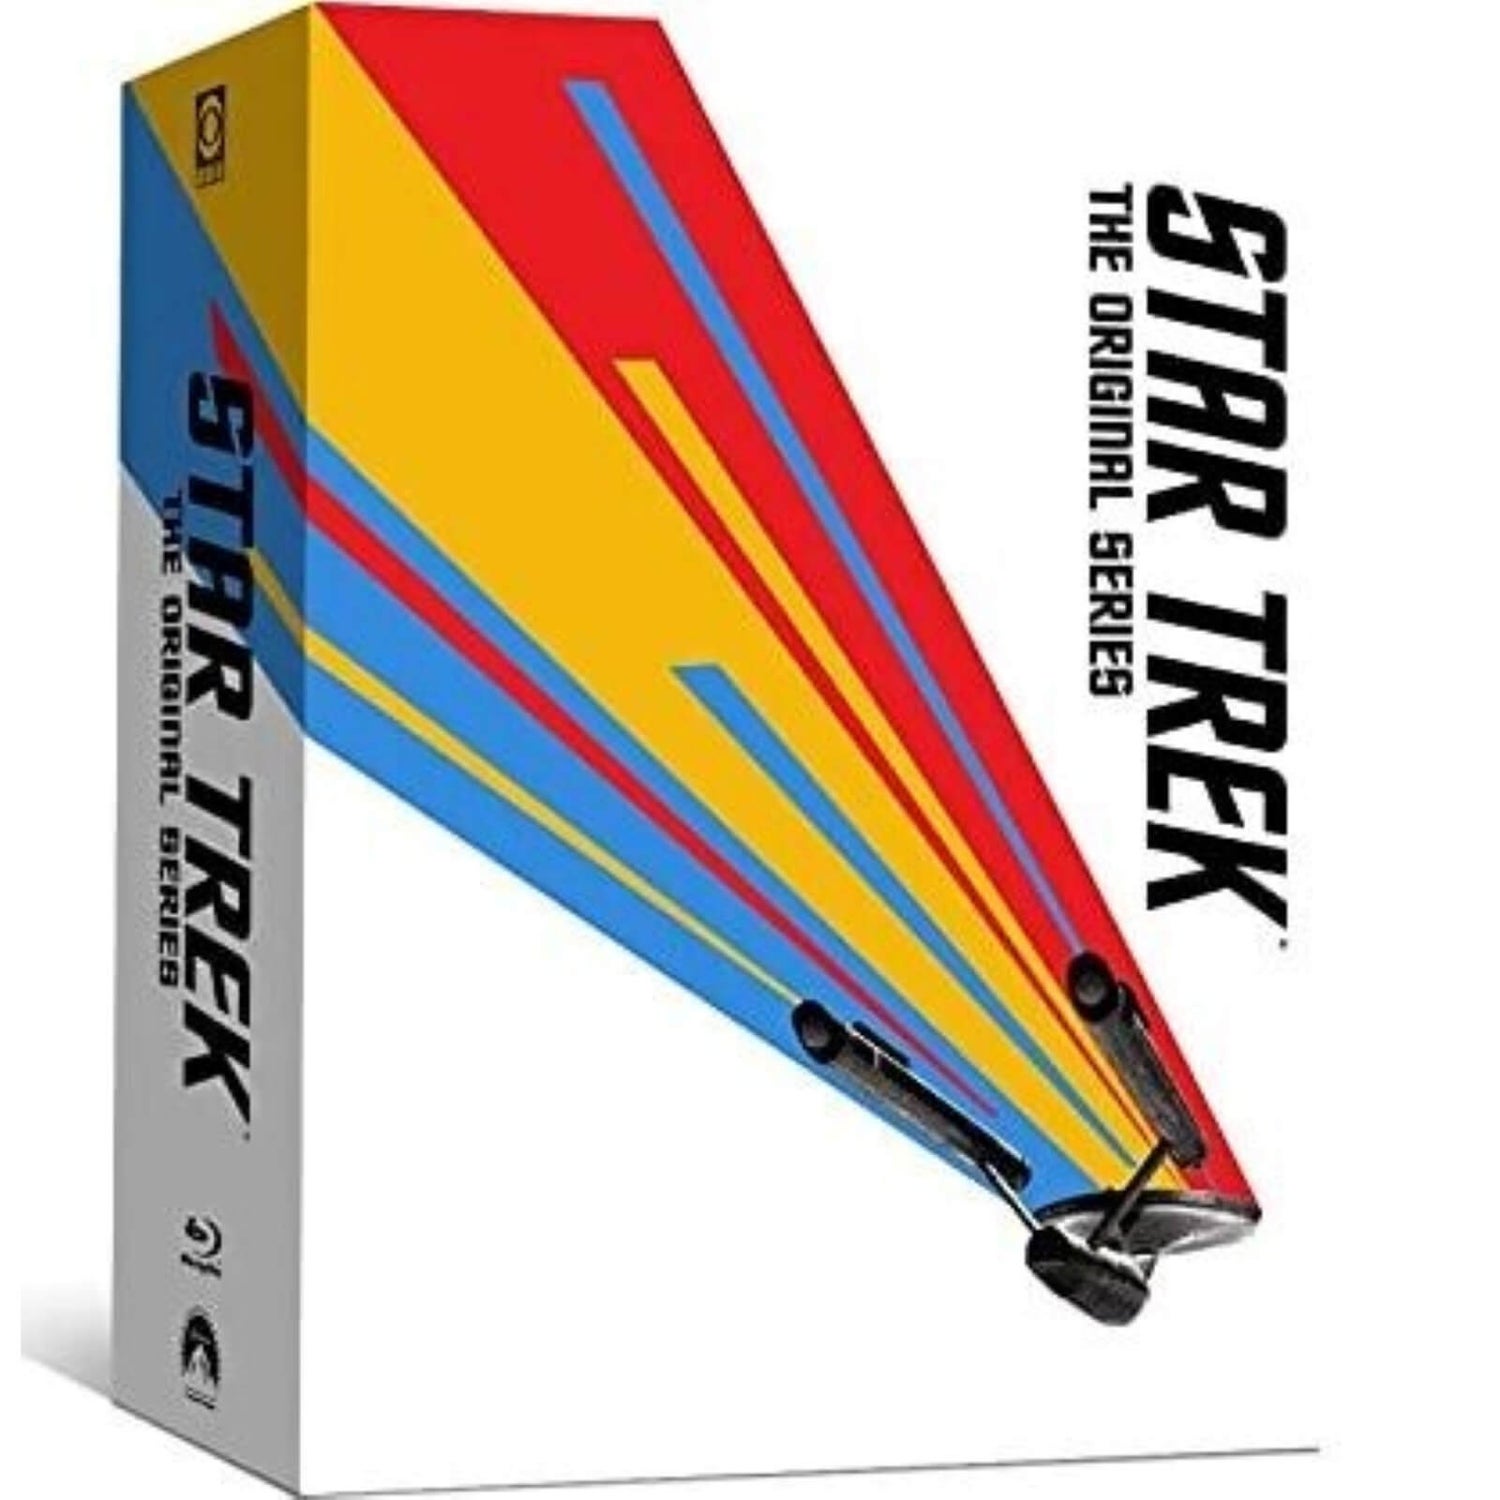 Star Trek: The Original Series: The Complete Series - Steelbook